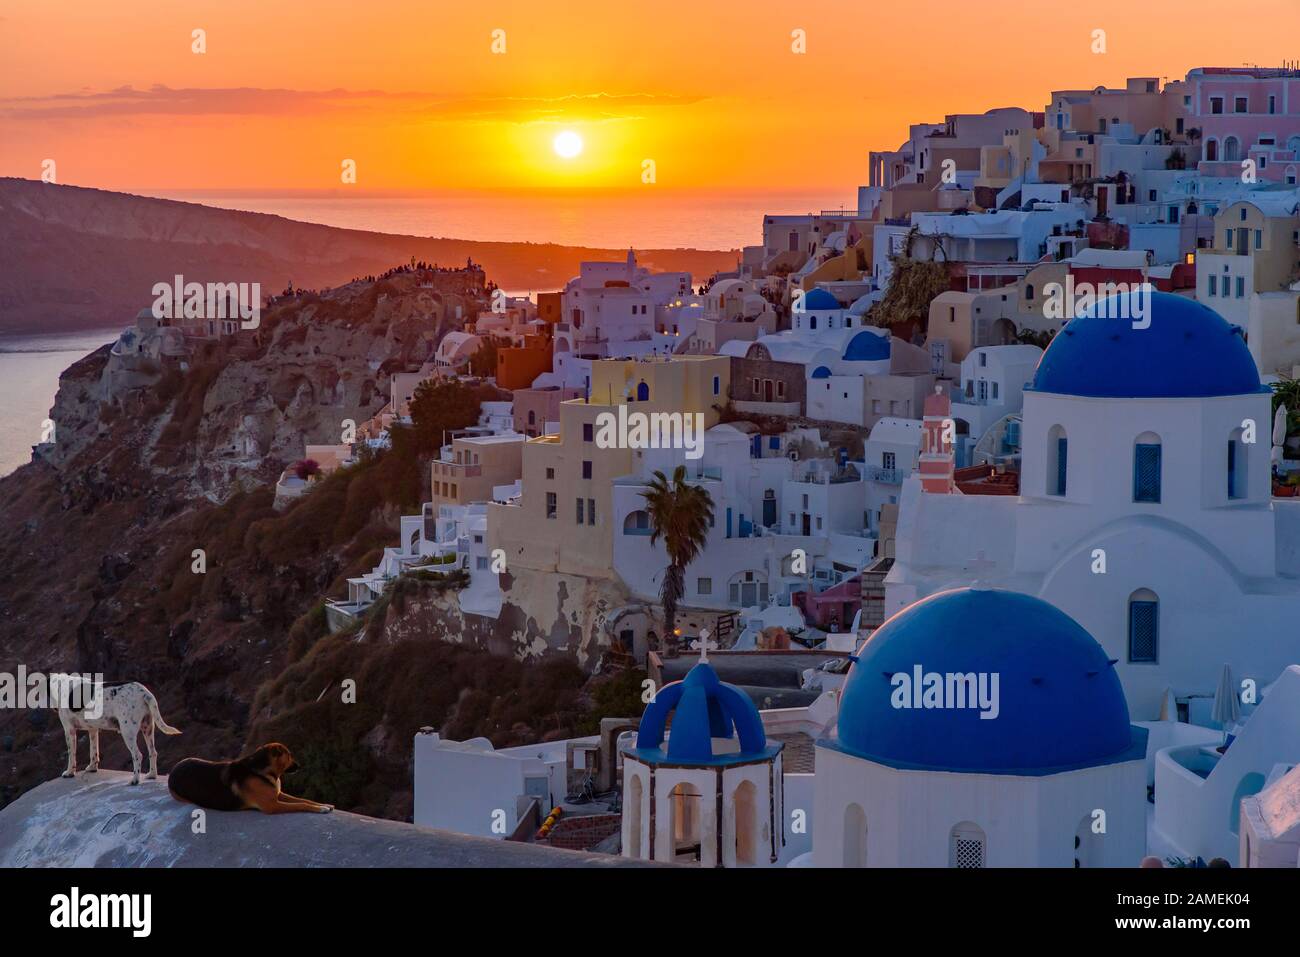 Églises au dôme bleu et maisons blanches traditionnelles face à la mer Égée avec lumière chaude au coucher du soleil à Oia, Santorin, Grèce Banque D'Images